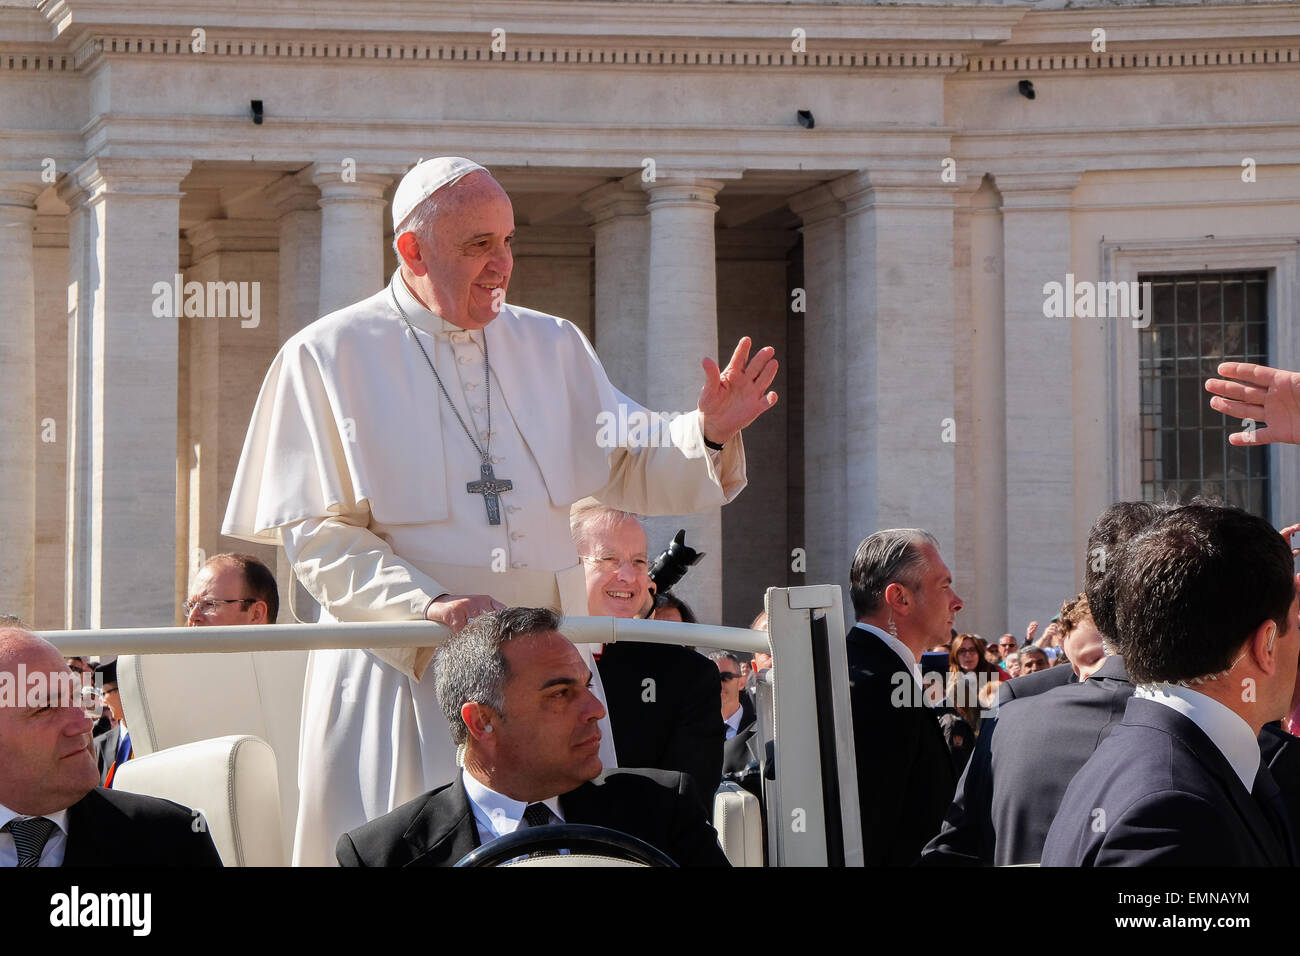 La cité du Vatican. 22 avr, 2015. Le pape François, Audience Générale du 22 avril 2015 Crédit : Realy Easy Star/Alamy Live News Banque D'Images